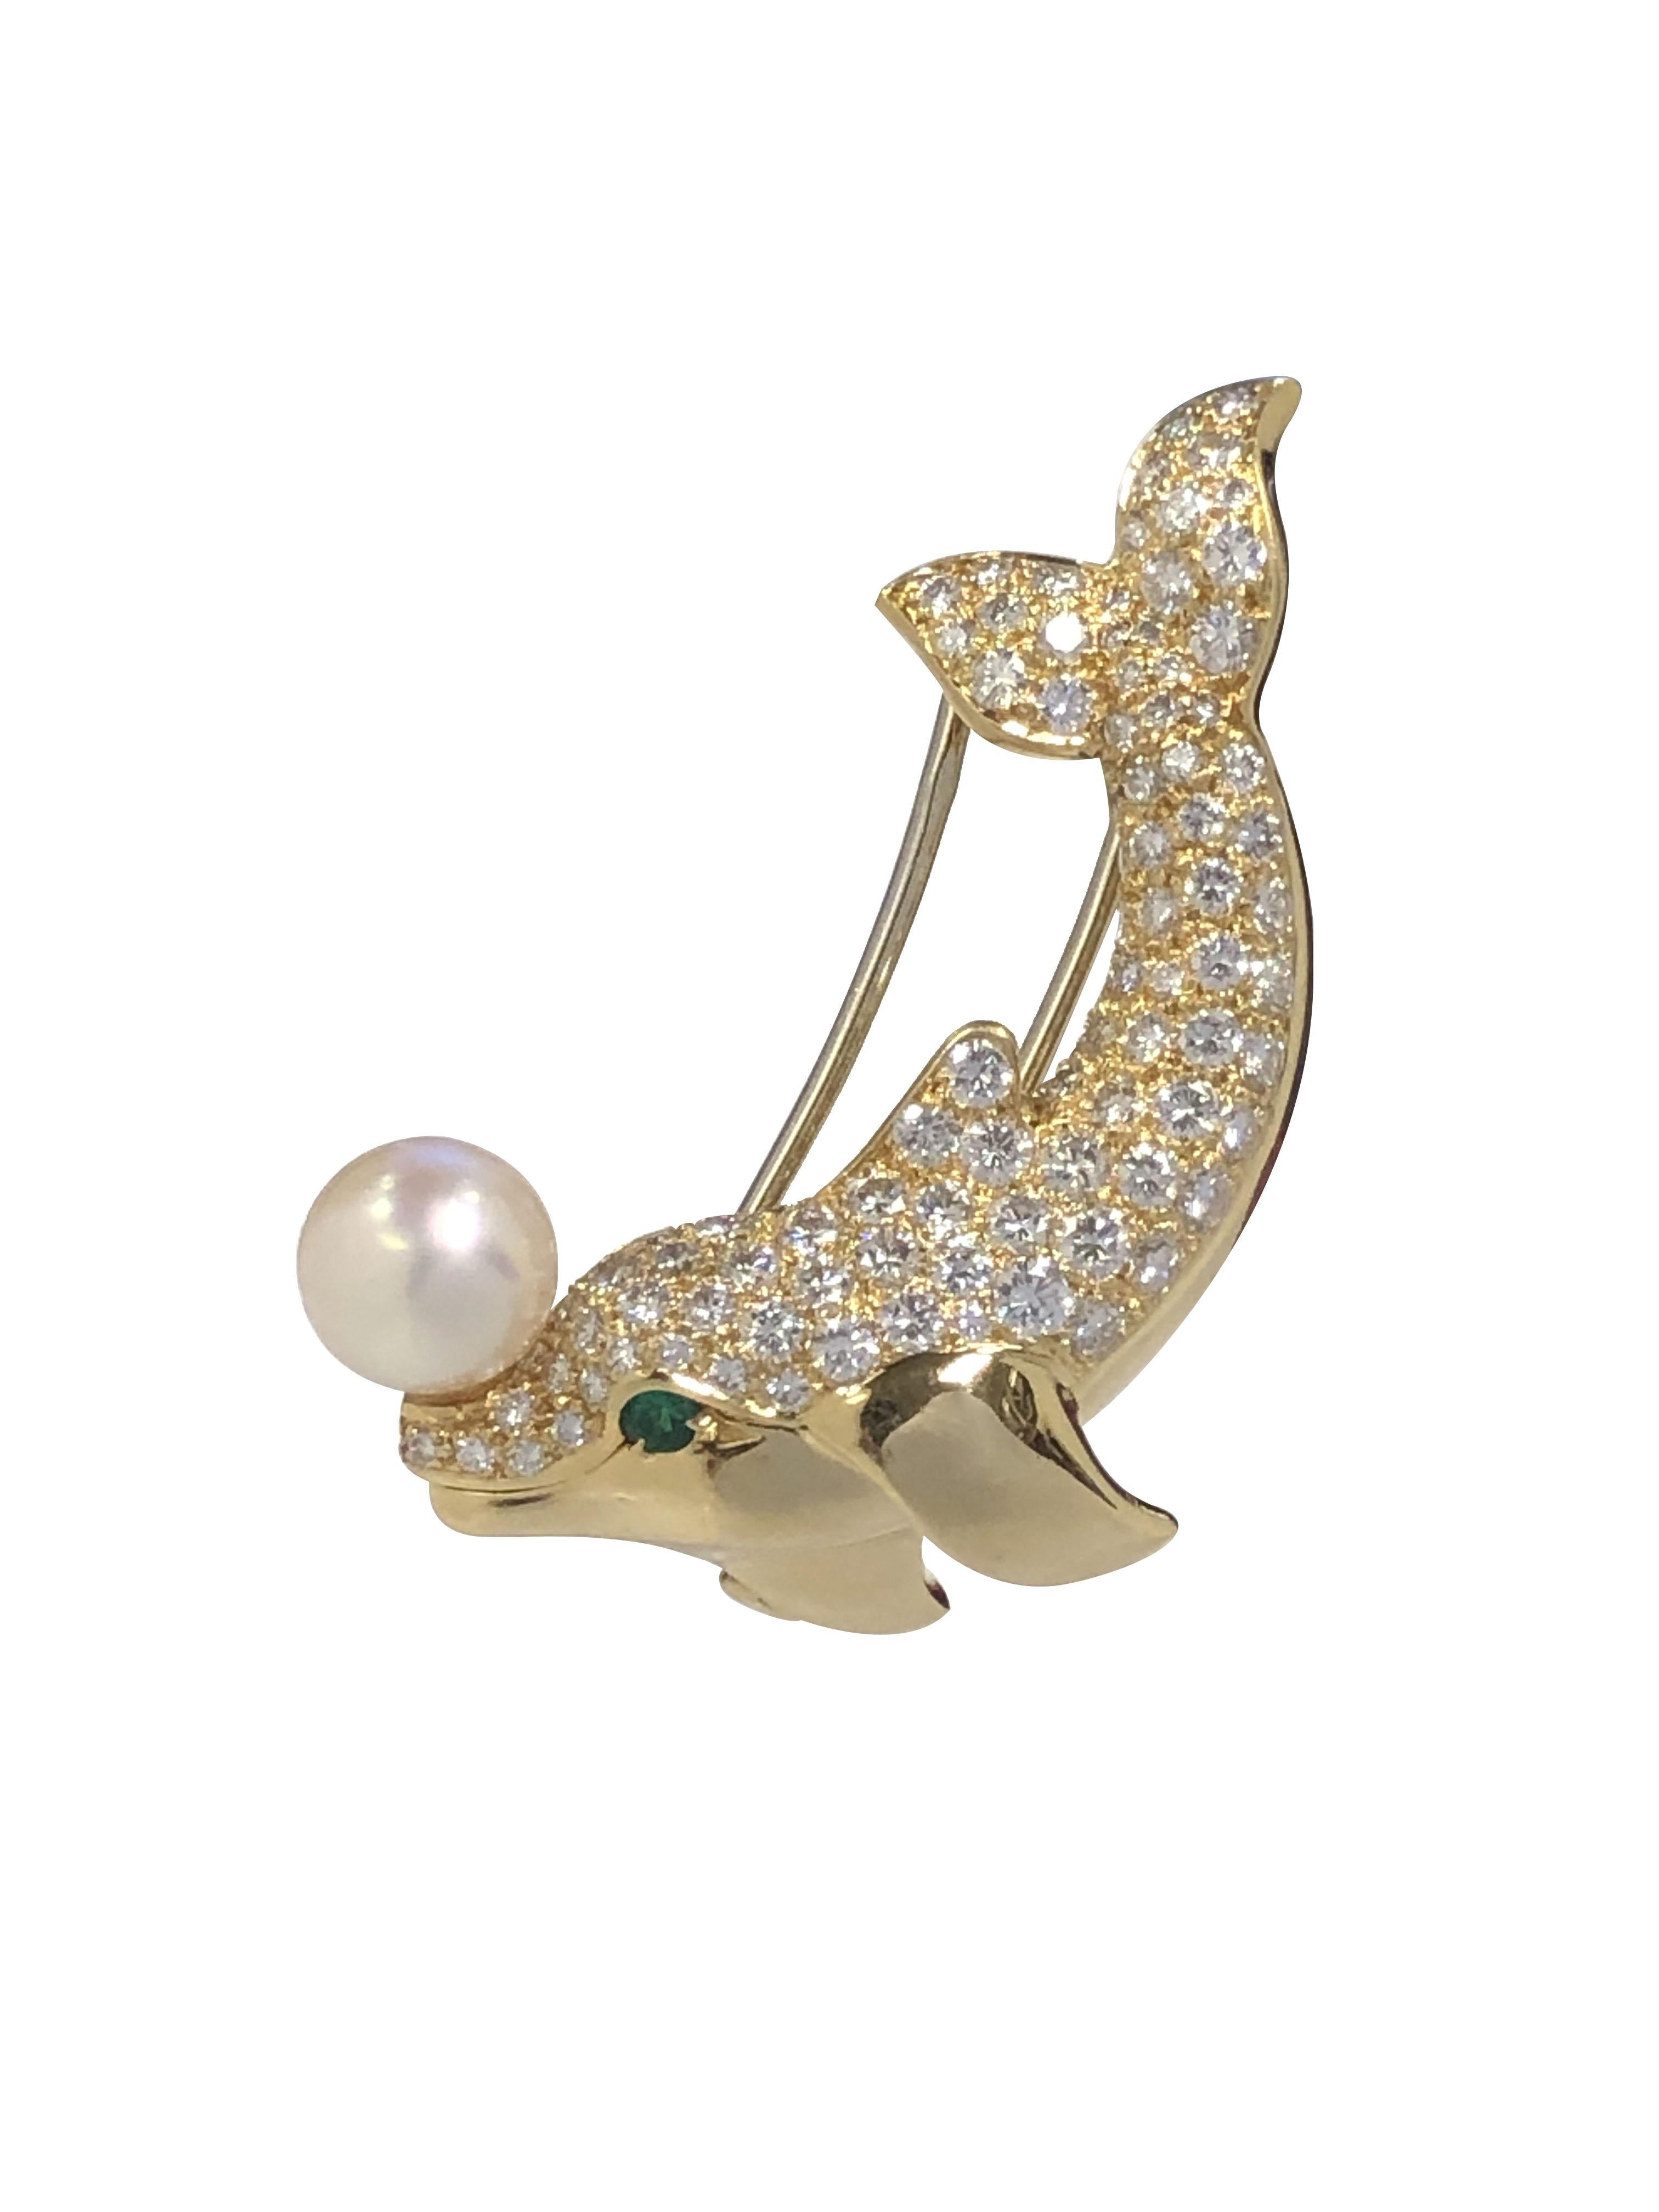 Circa 1990 Cartier Paris Whimsical Dolphin Clip Brooch, mesurant 1 1/2 pouces de longueur X 1 pouce, serti de diamants ronds de taille Brilliante totalisant 3.50 Carats, également serti d'un oeil d'Emeraude et d'une perle fine de 7 M&M en équilibre